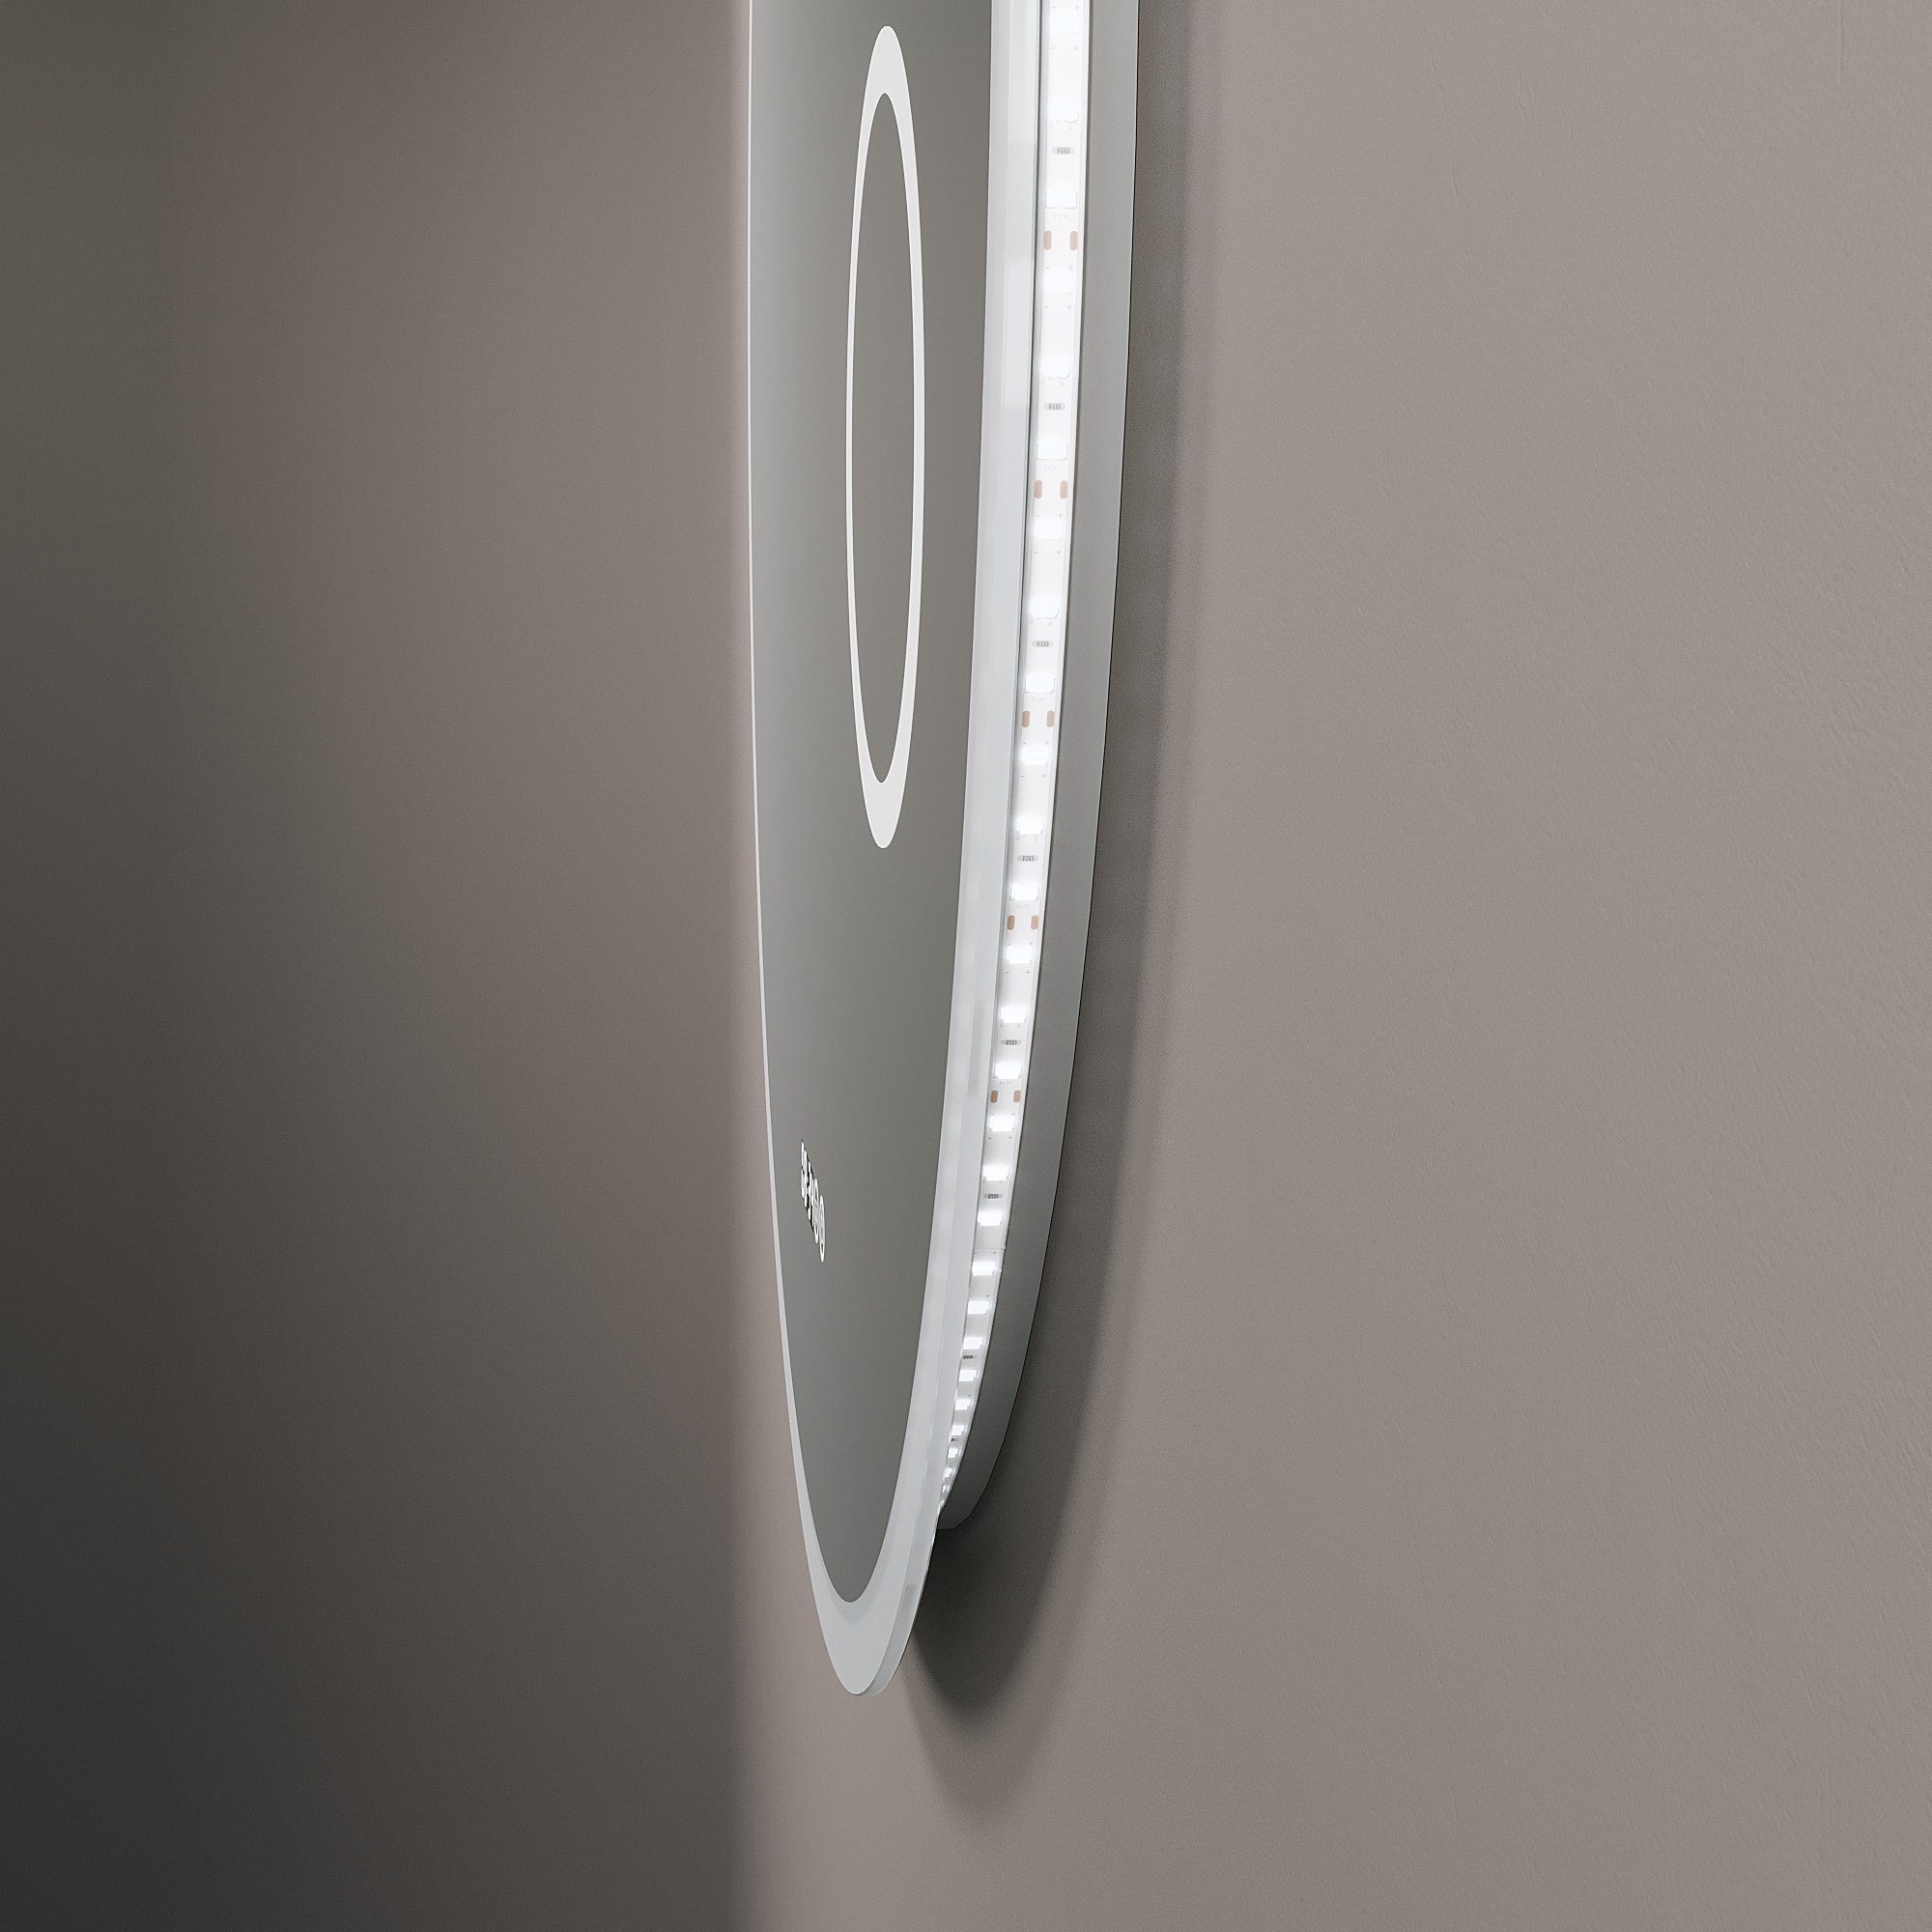 AQUABATOS Wandspiegel Badspiegel Beleuchtung Bad badezimmerspiegel, Lichtspiegel mit rund 3-fach-Vergrößerung,Kaltweiß,dimmbar,Digitaluhr,beschlagfrei